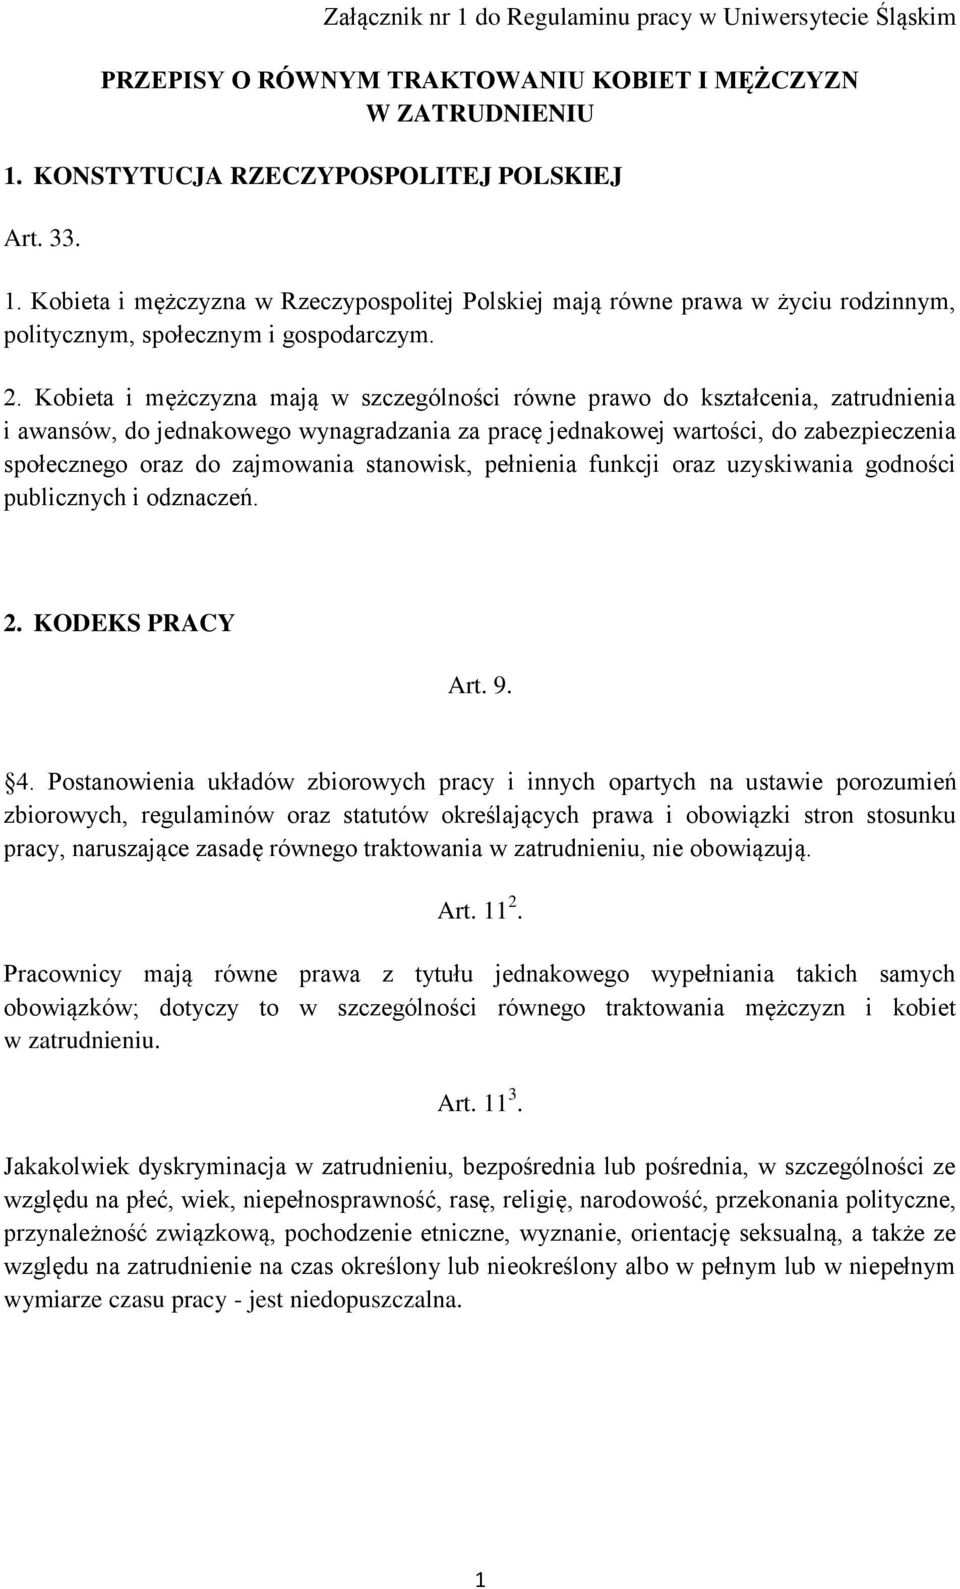 zajmowania stanowisk, pełnienia funkcji oraz uzyskiwania godności publicznych i odznaczeń. 2. KODEKS PRACY Art. 9. 4.